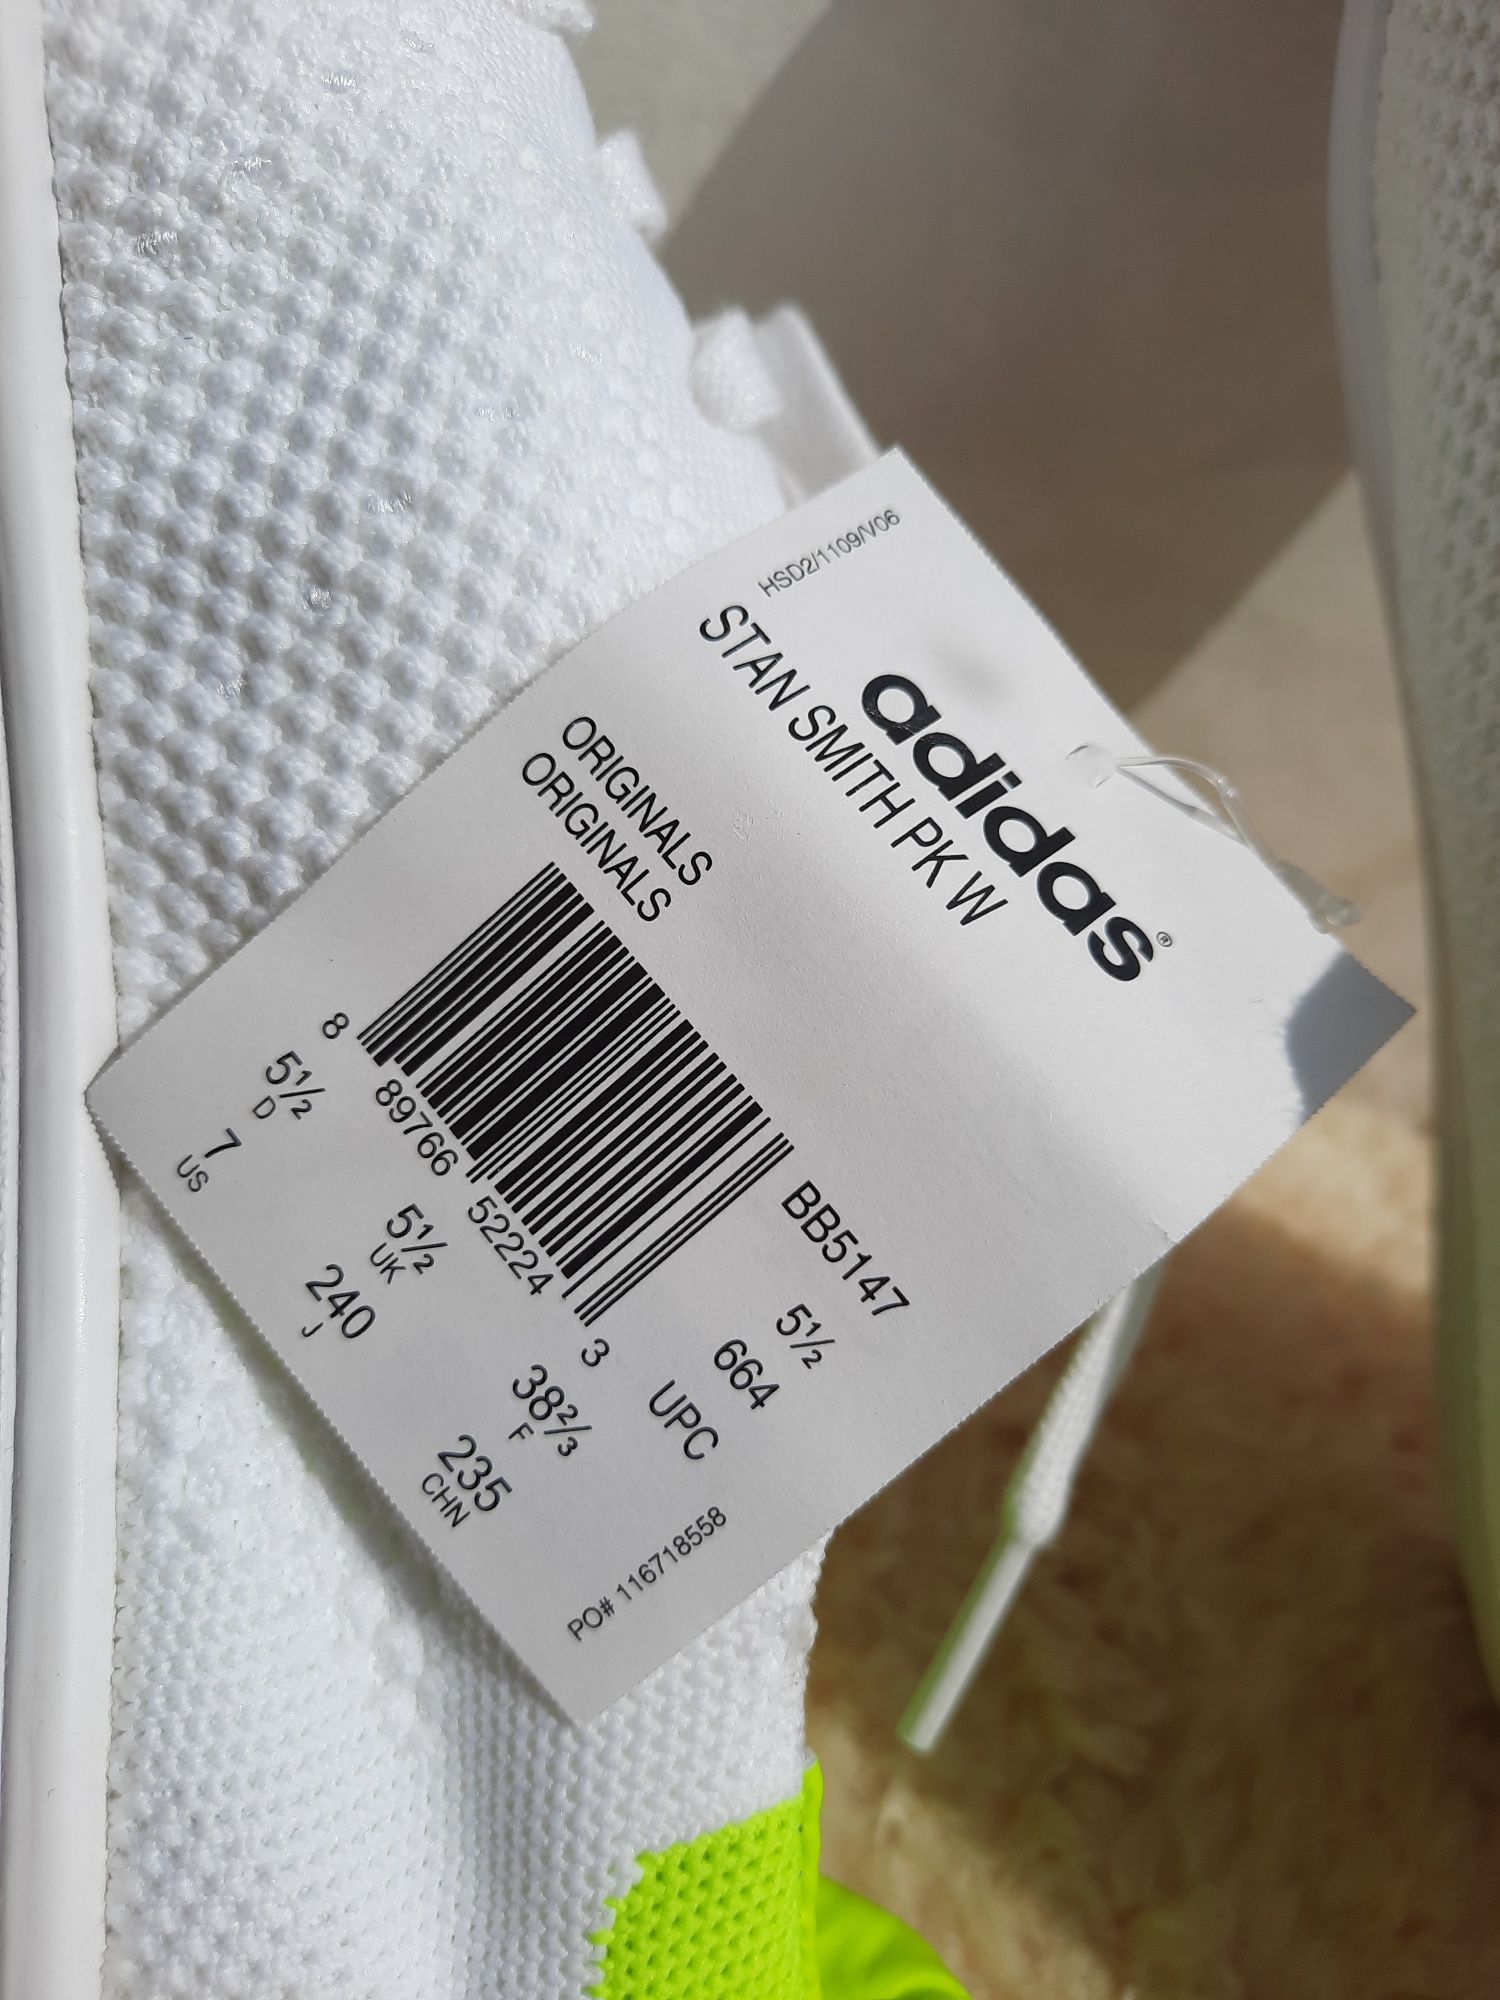 Adidas Stan Smith кросівки, 38 розмір. Нові.